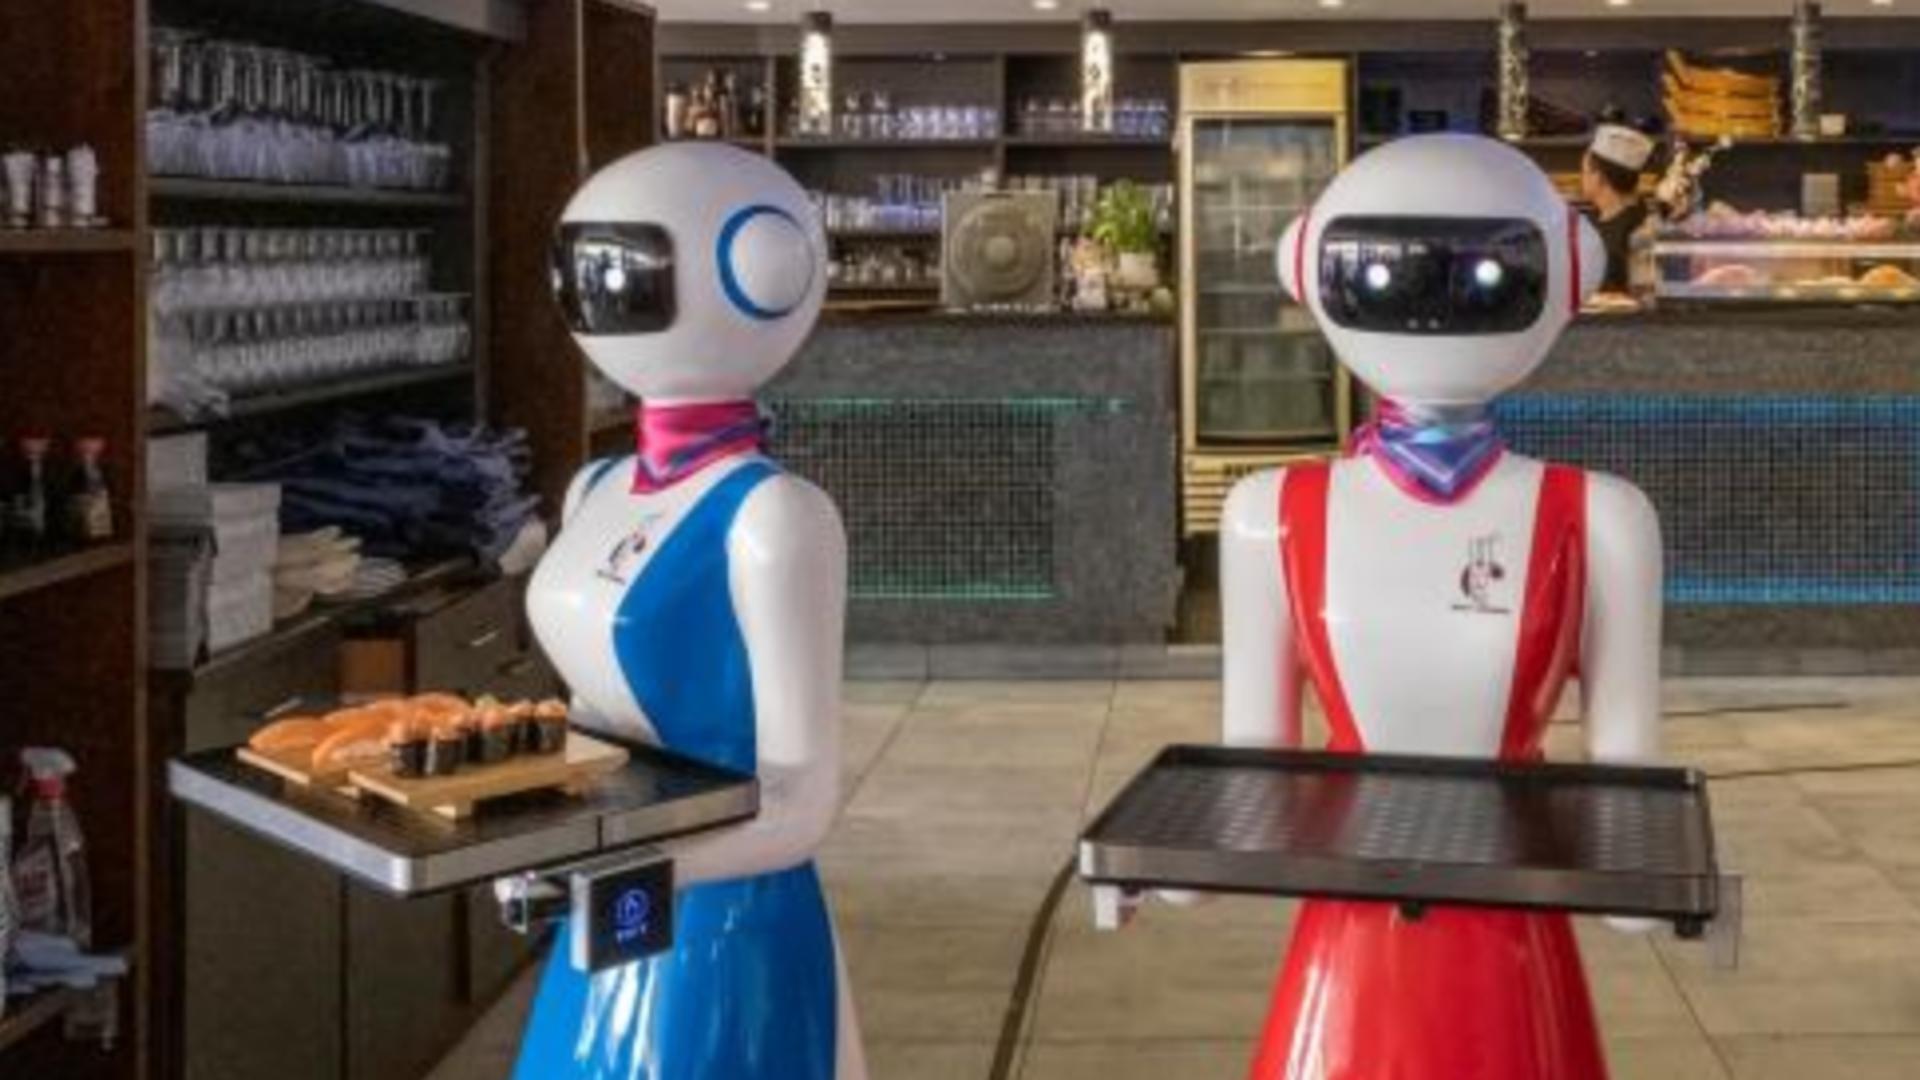 Bulgarii introduc chelneri roboți în restaurante. Vorbesc engleză, bulgară, iau comenzi și servesc